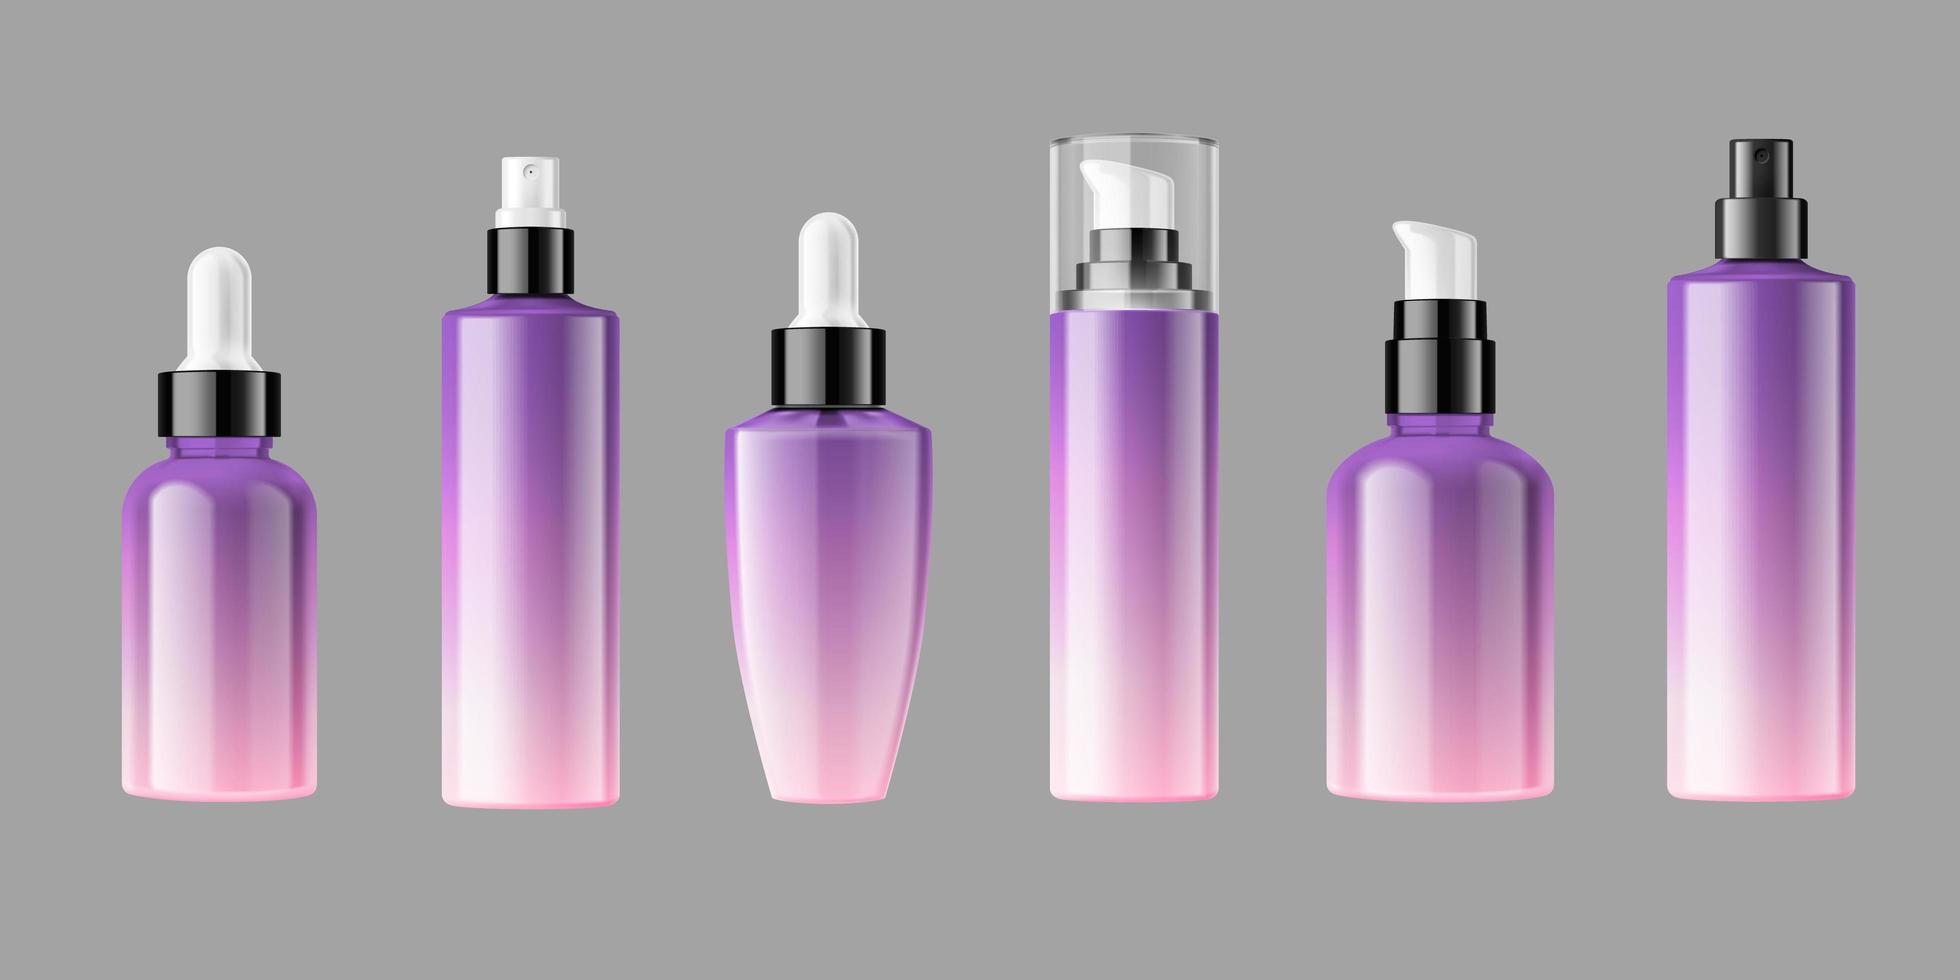 Blank cosmetic bottles packaging mockup vector